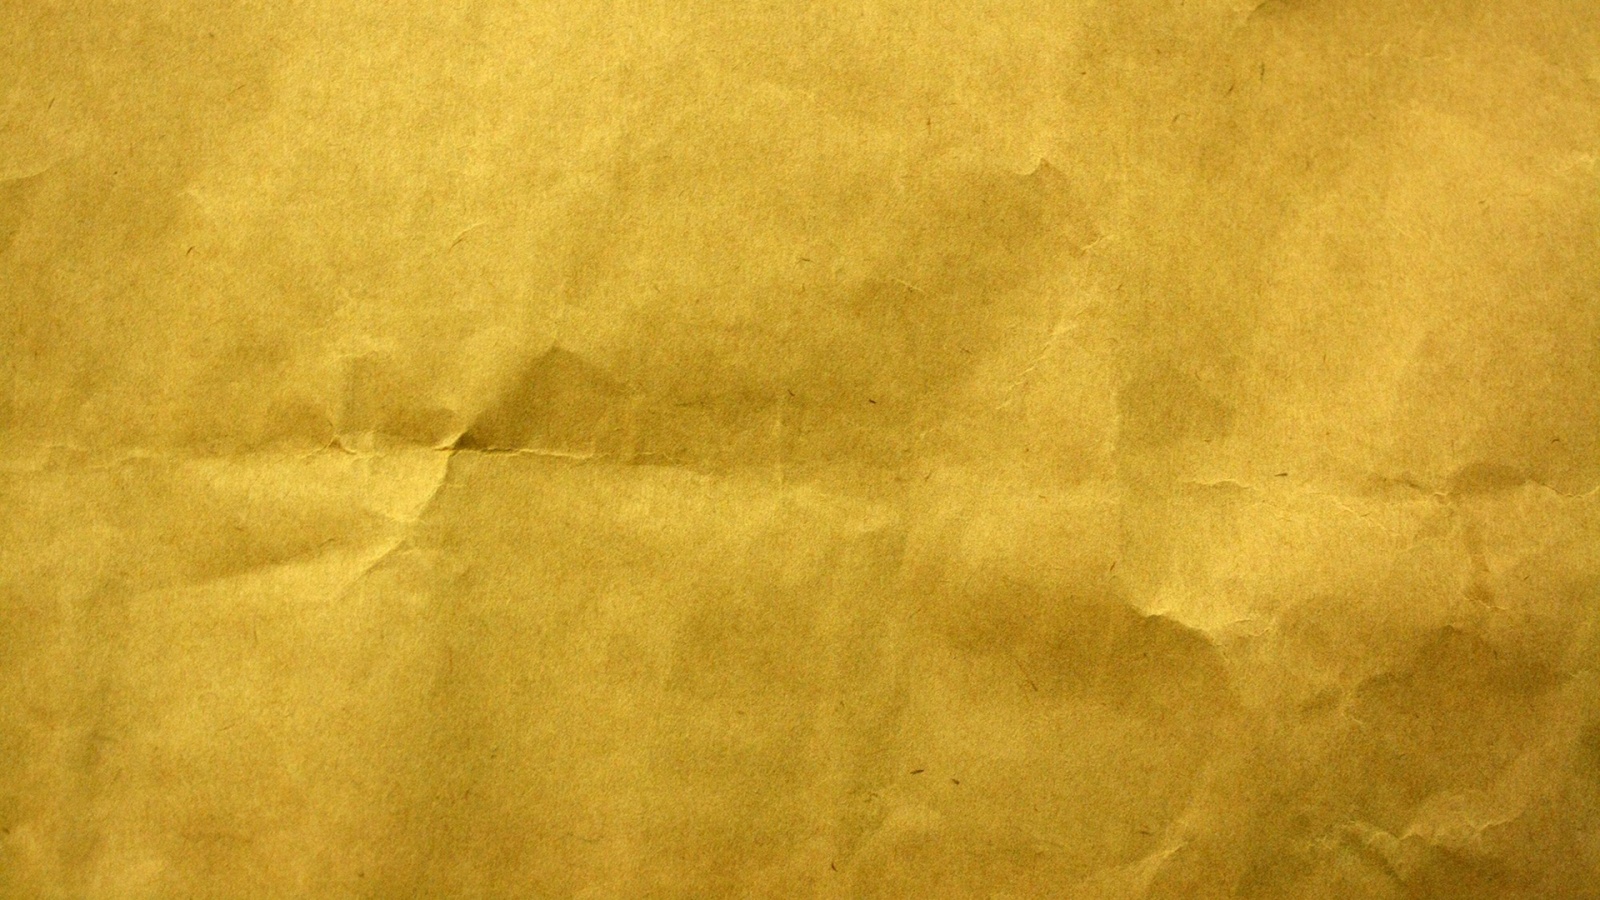 Yellow Paper Texture Wallpaper 5503 1600x900 - uMad.com